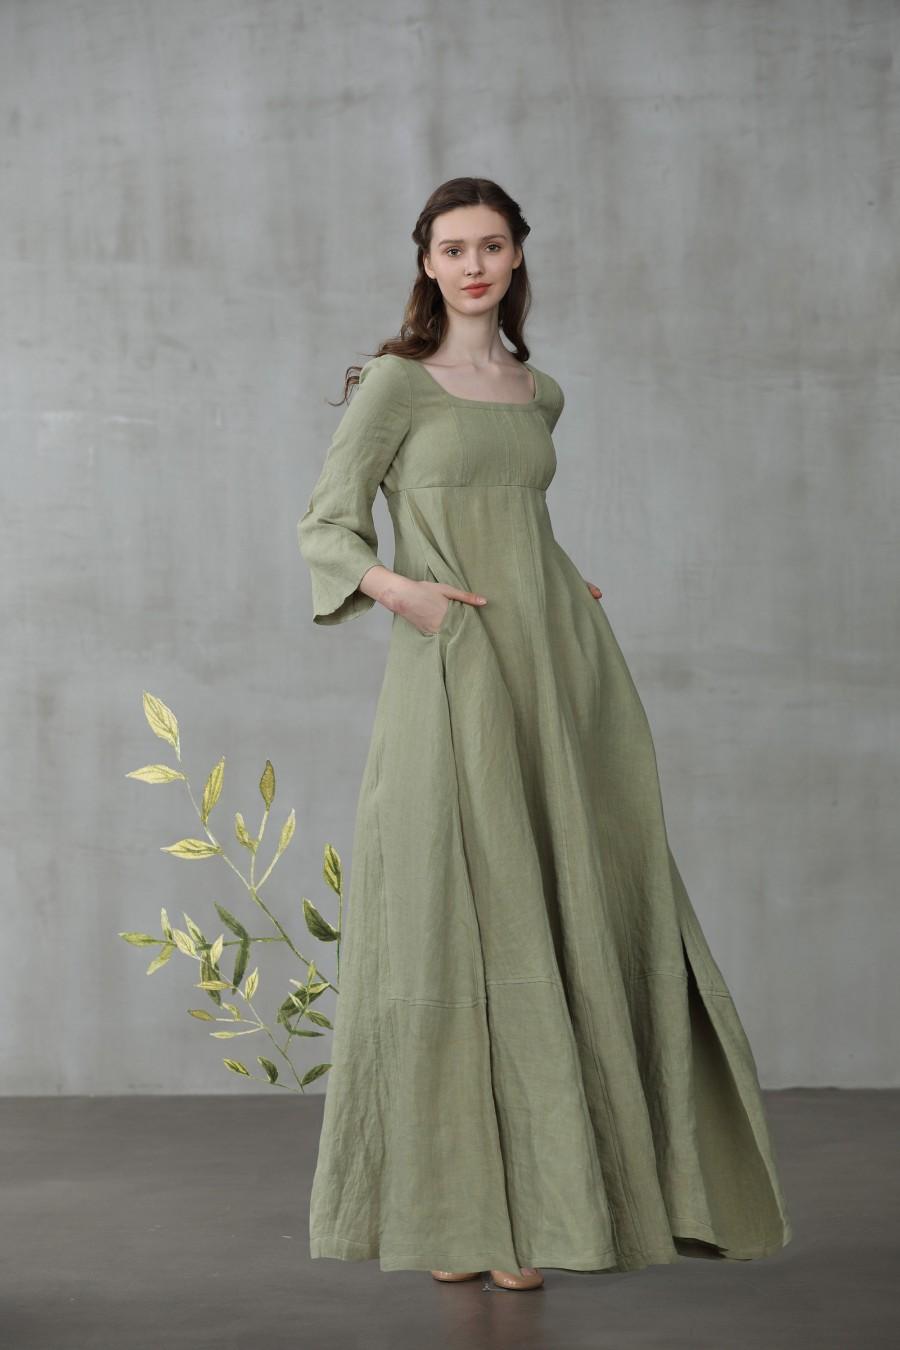 Wedding - Medieval dress, linen dress, maxi linen dress, puff sleeve dress, wedding dress, green dress, princess dress, Renaissance dress